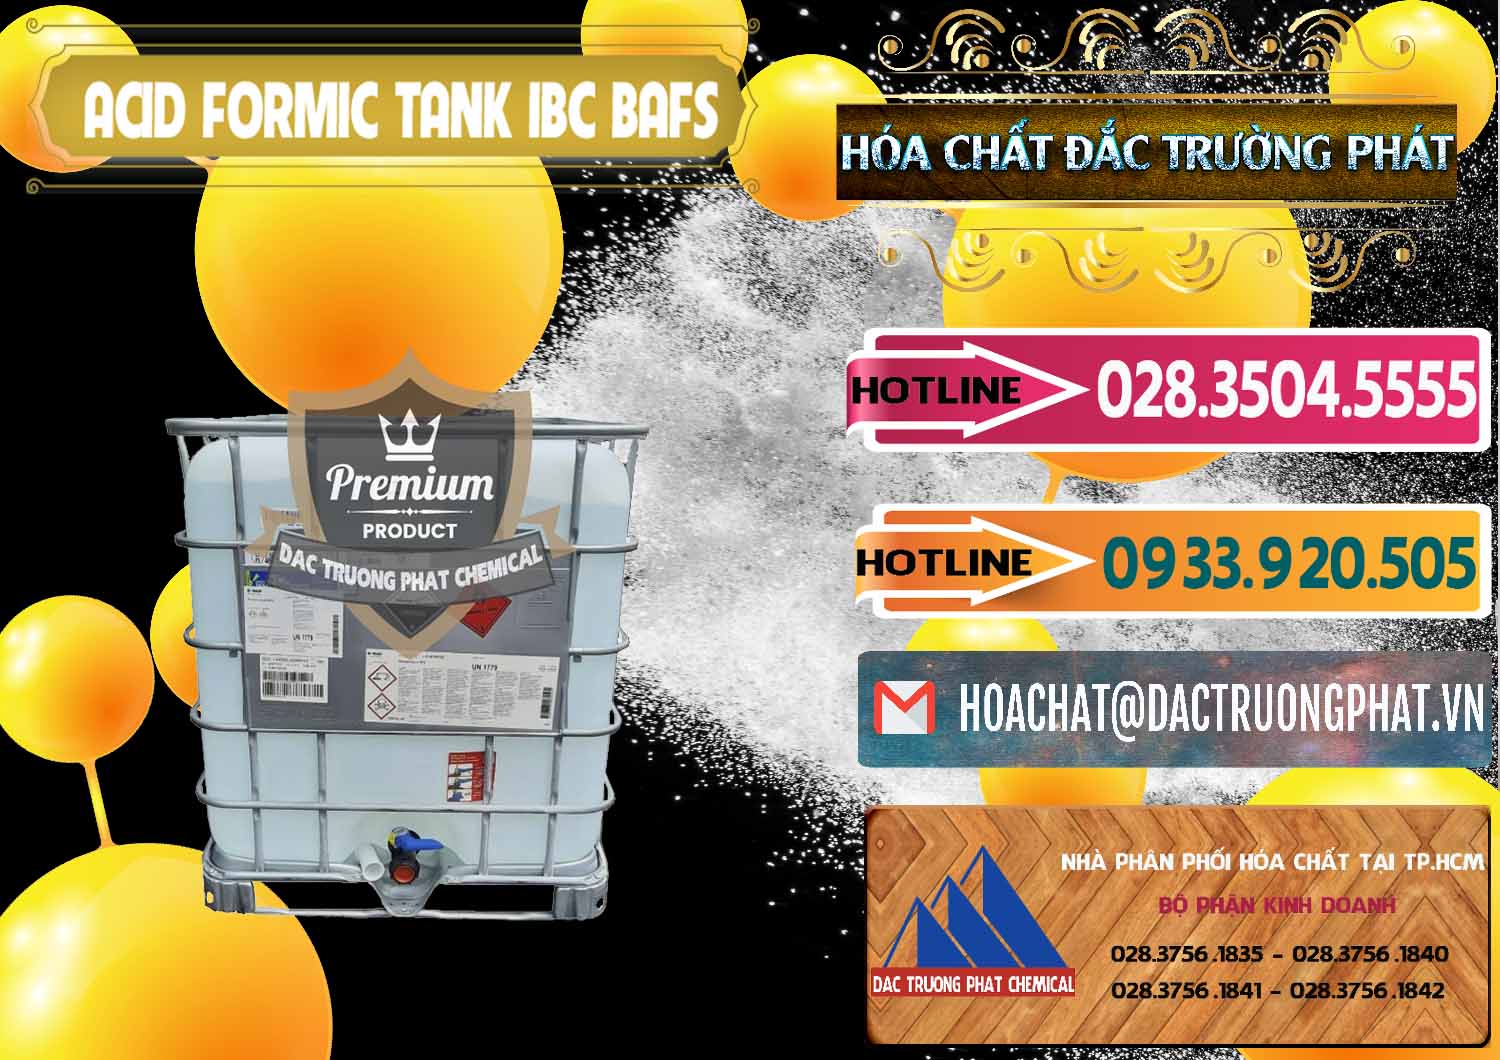 Nơi chuyên nhập khẩu - bán Acid Formic - Axit Formic Tank - Bồn IBC BASF Đức - 0366 - Cty cung cấp & nhập khẩu hóa chất tại TP.HCM - dactruongphat.vn